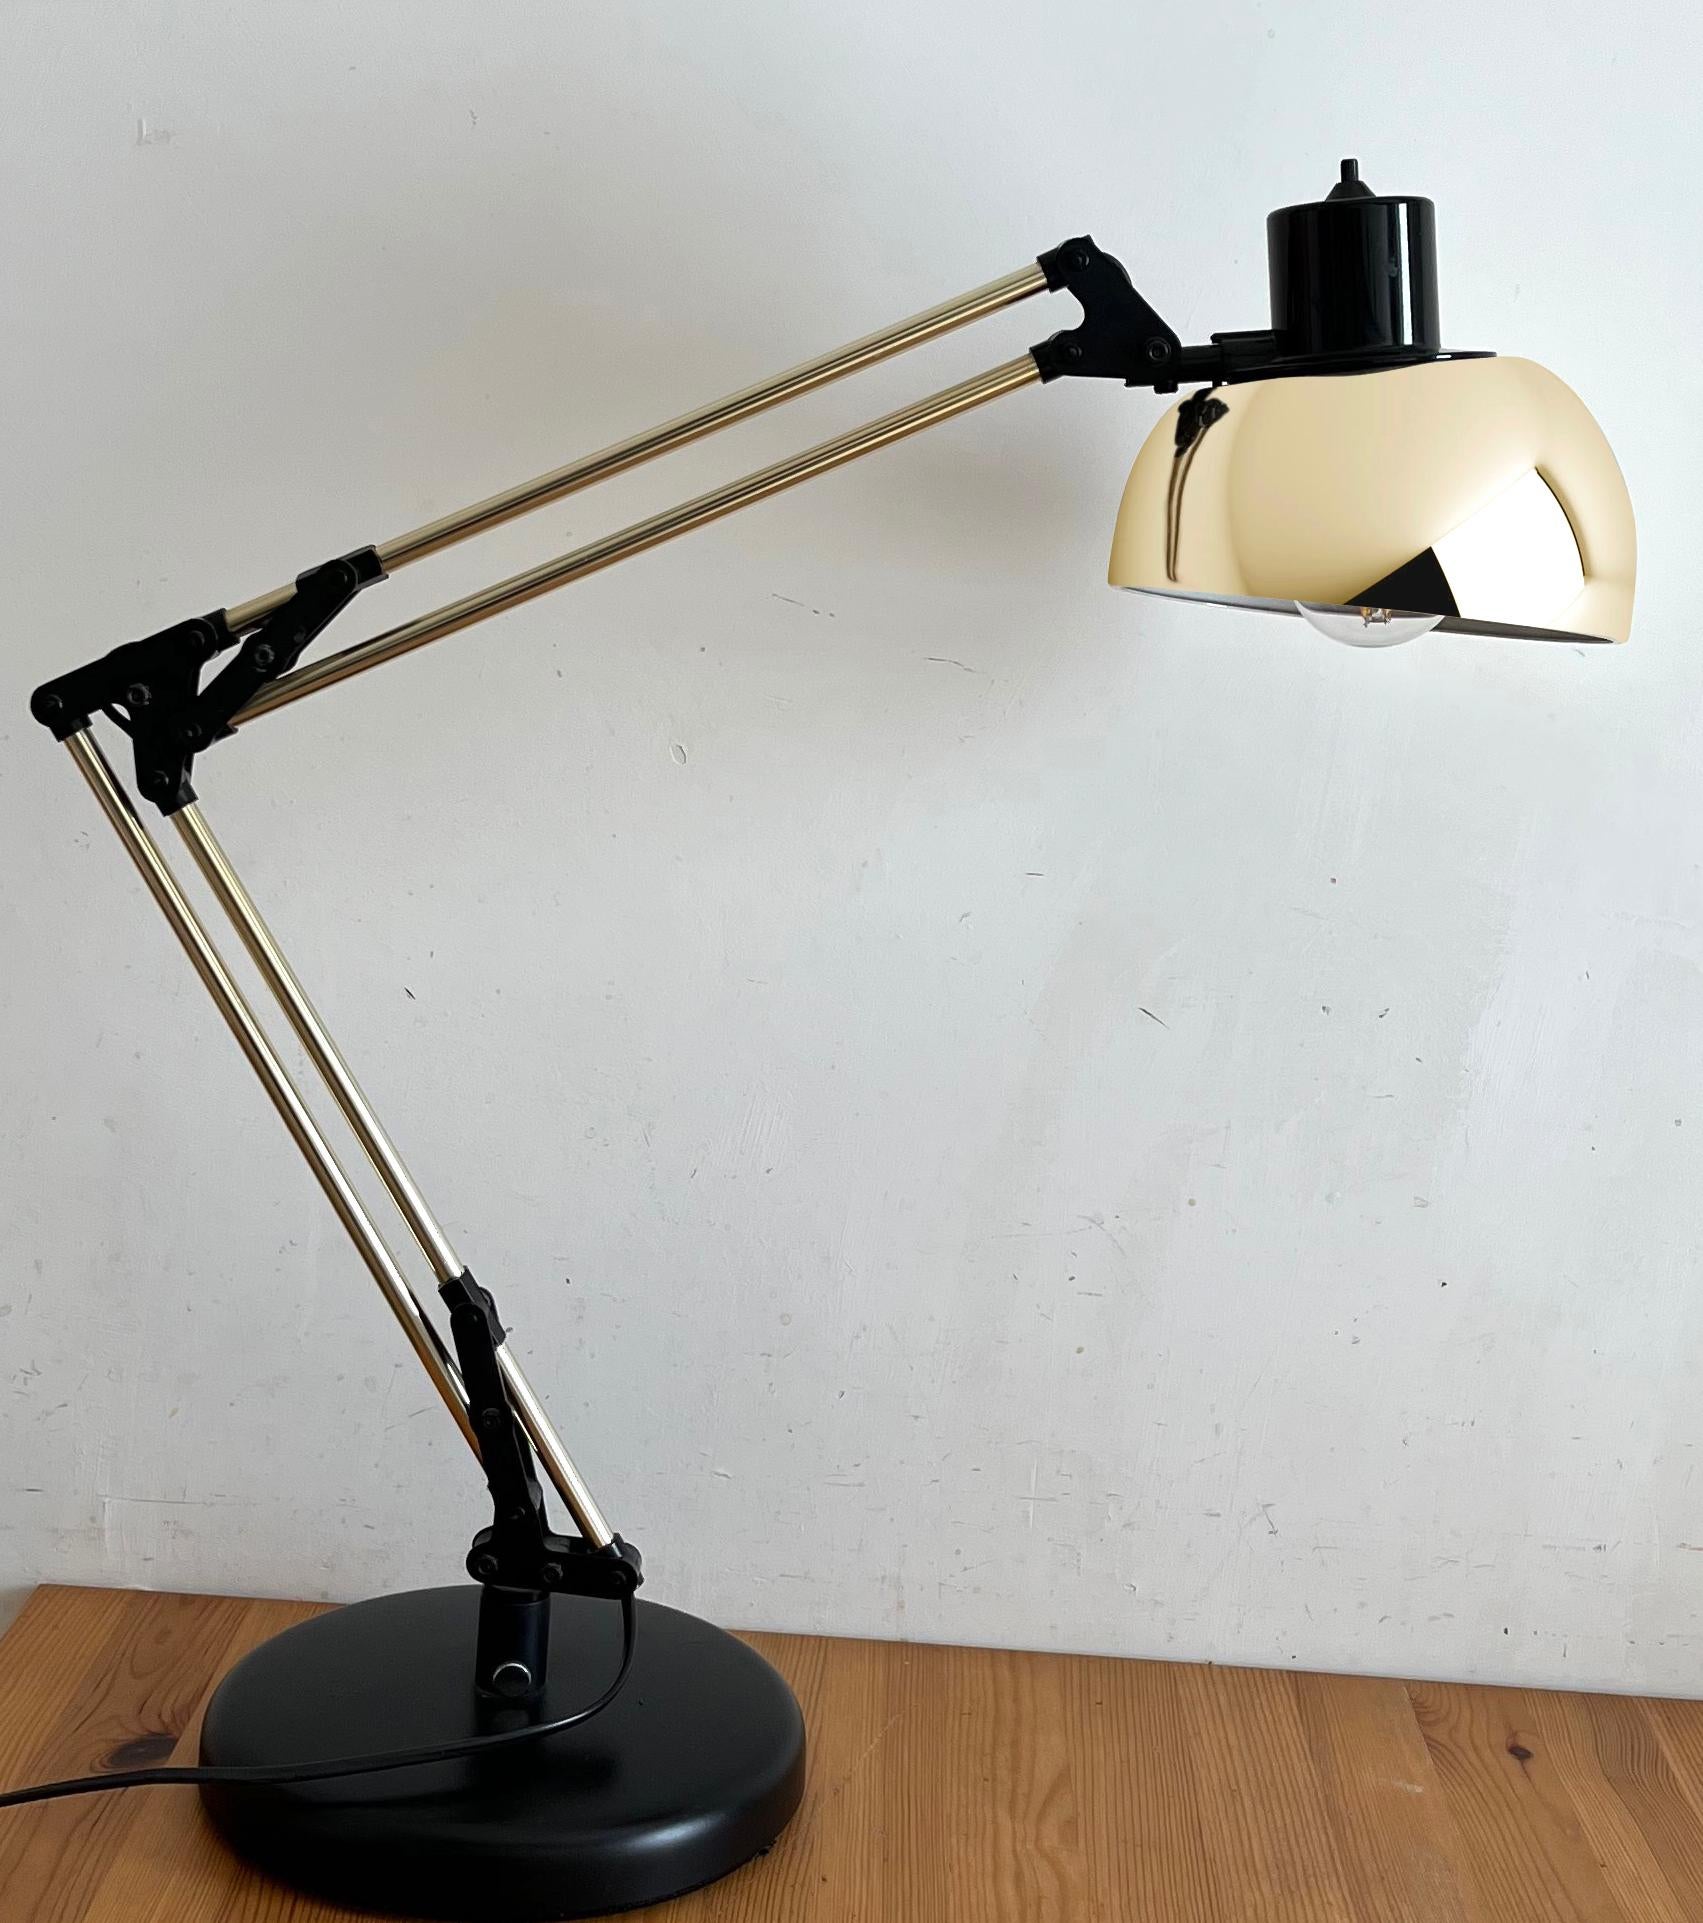 Bella lampada da tavolo degli anni 80 cerata da Luci e Dimensioni  Modell Giotto 
Die Lampe kann mit  due bracci ruota di 180°
